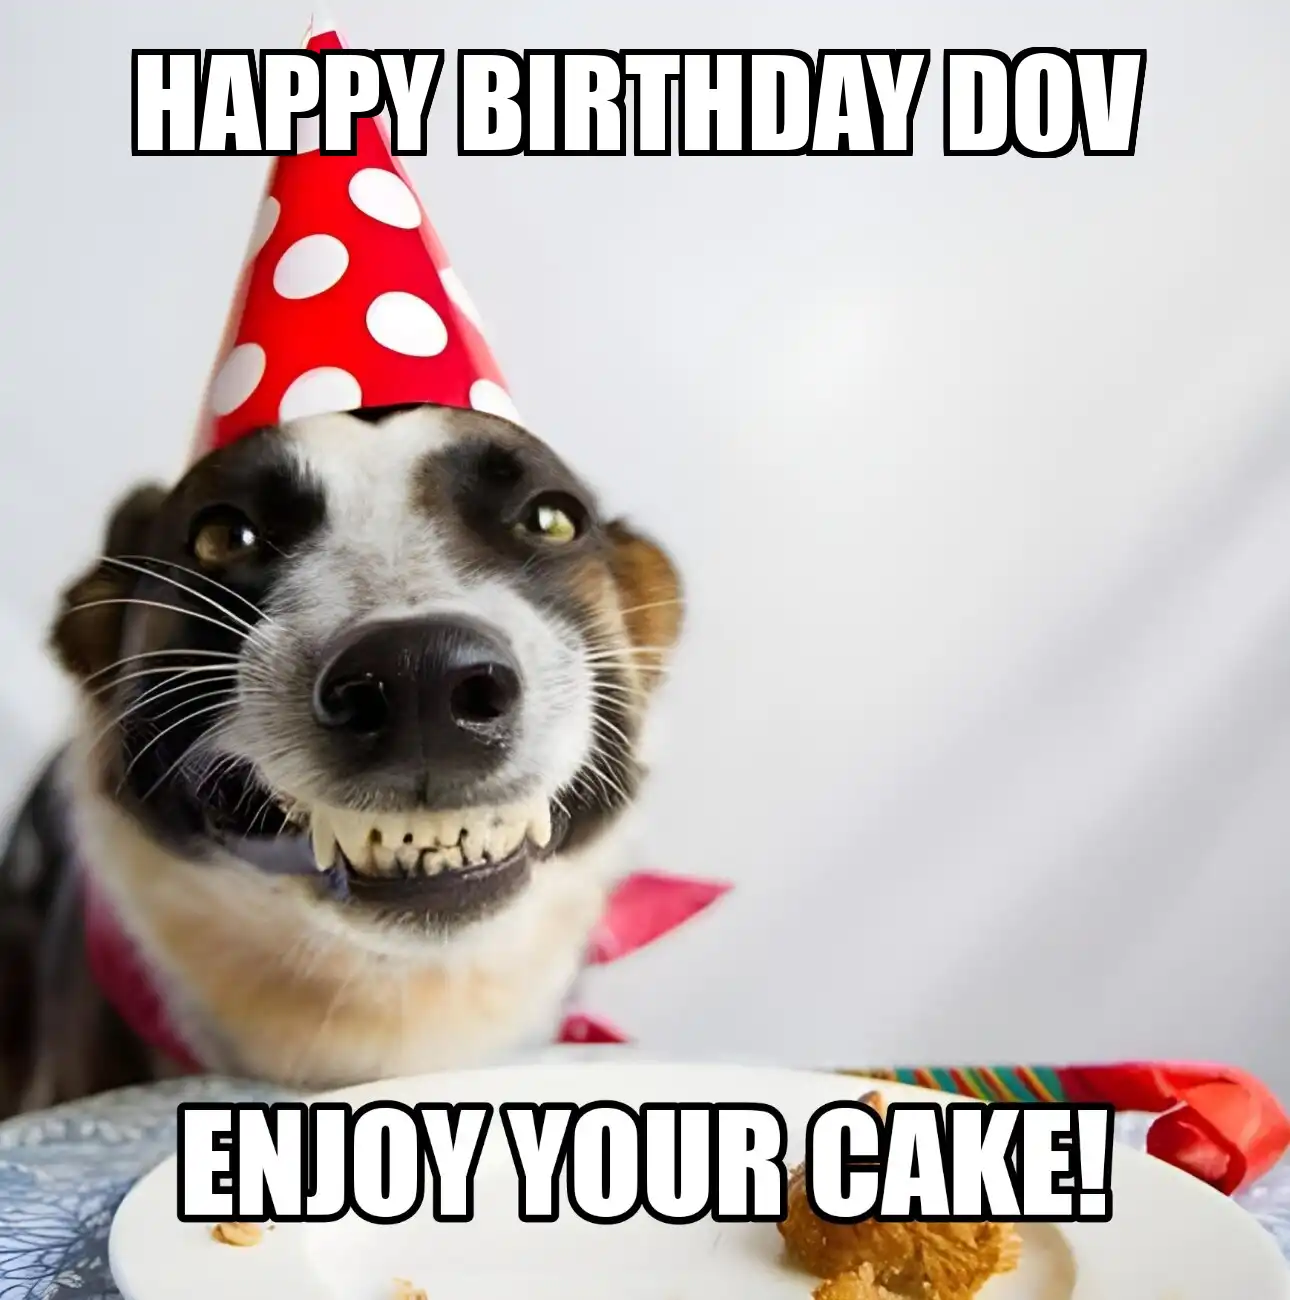 Happy Birthday Dov Enjoy Your Cake Dog Meme